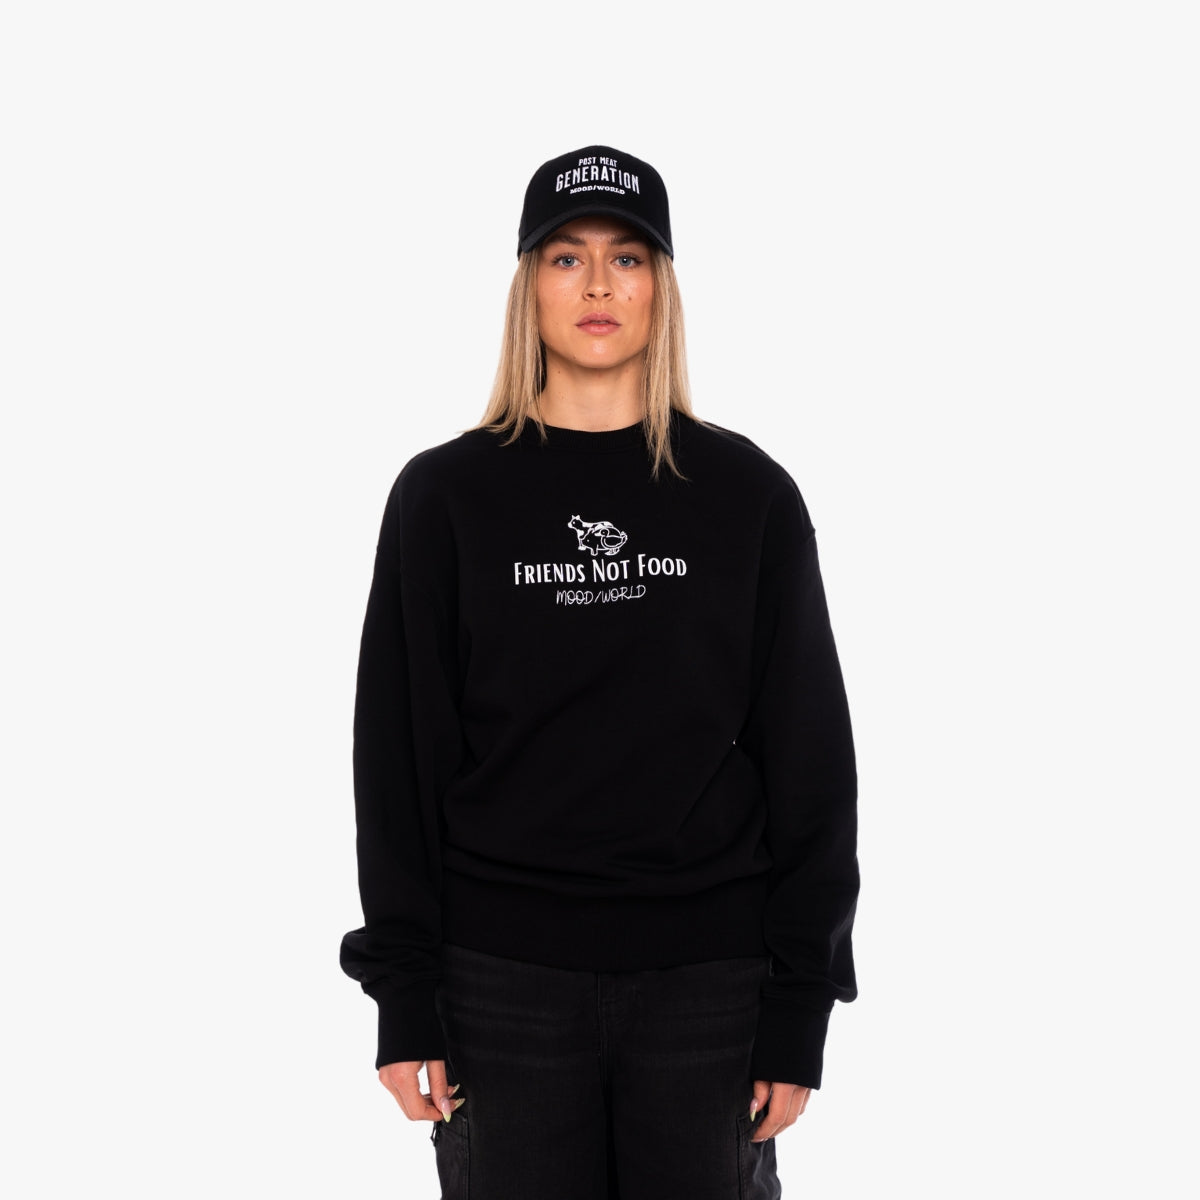 'FRIENDS NOT FOOD Signature' Organic Oversize Sweatshirt in der Farbe Black als Front Nahaufnahme getragen von einem weiblichen Model